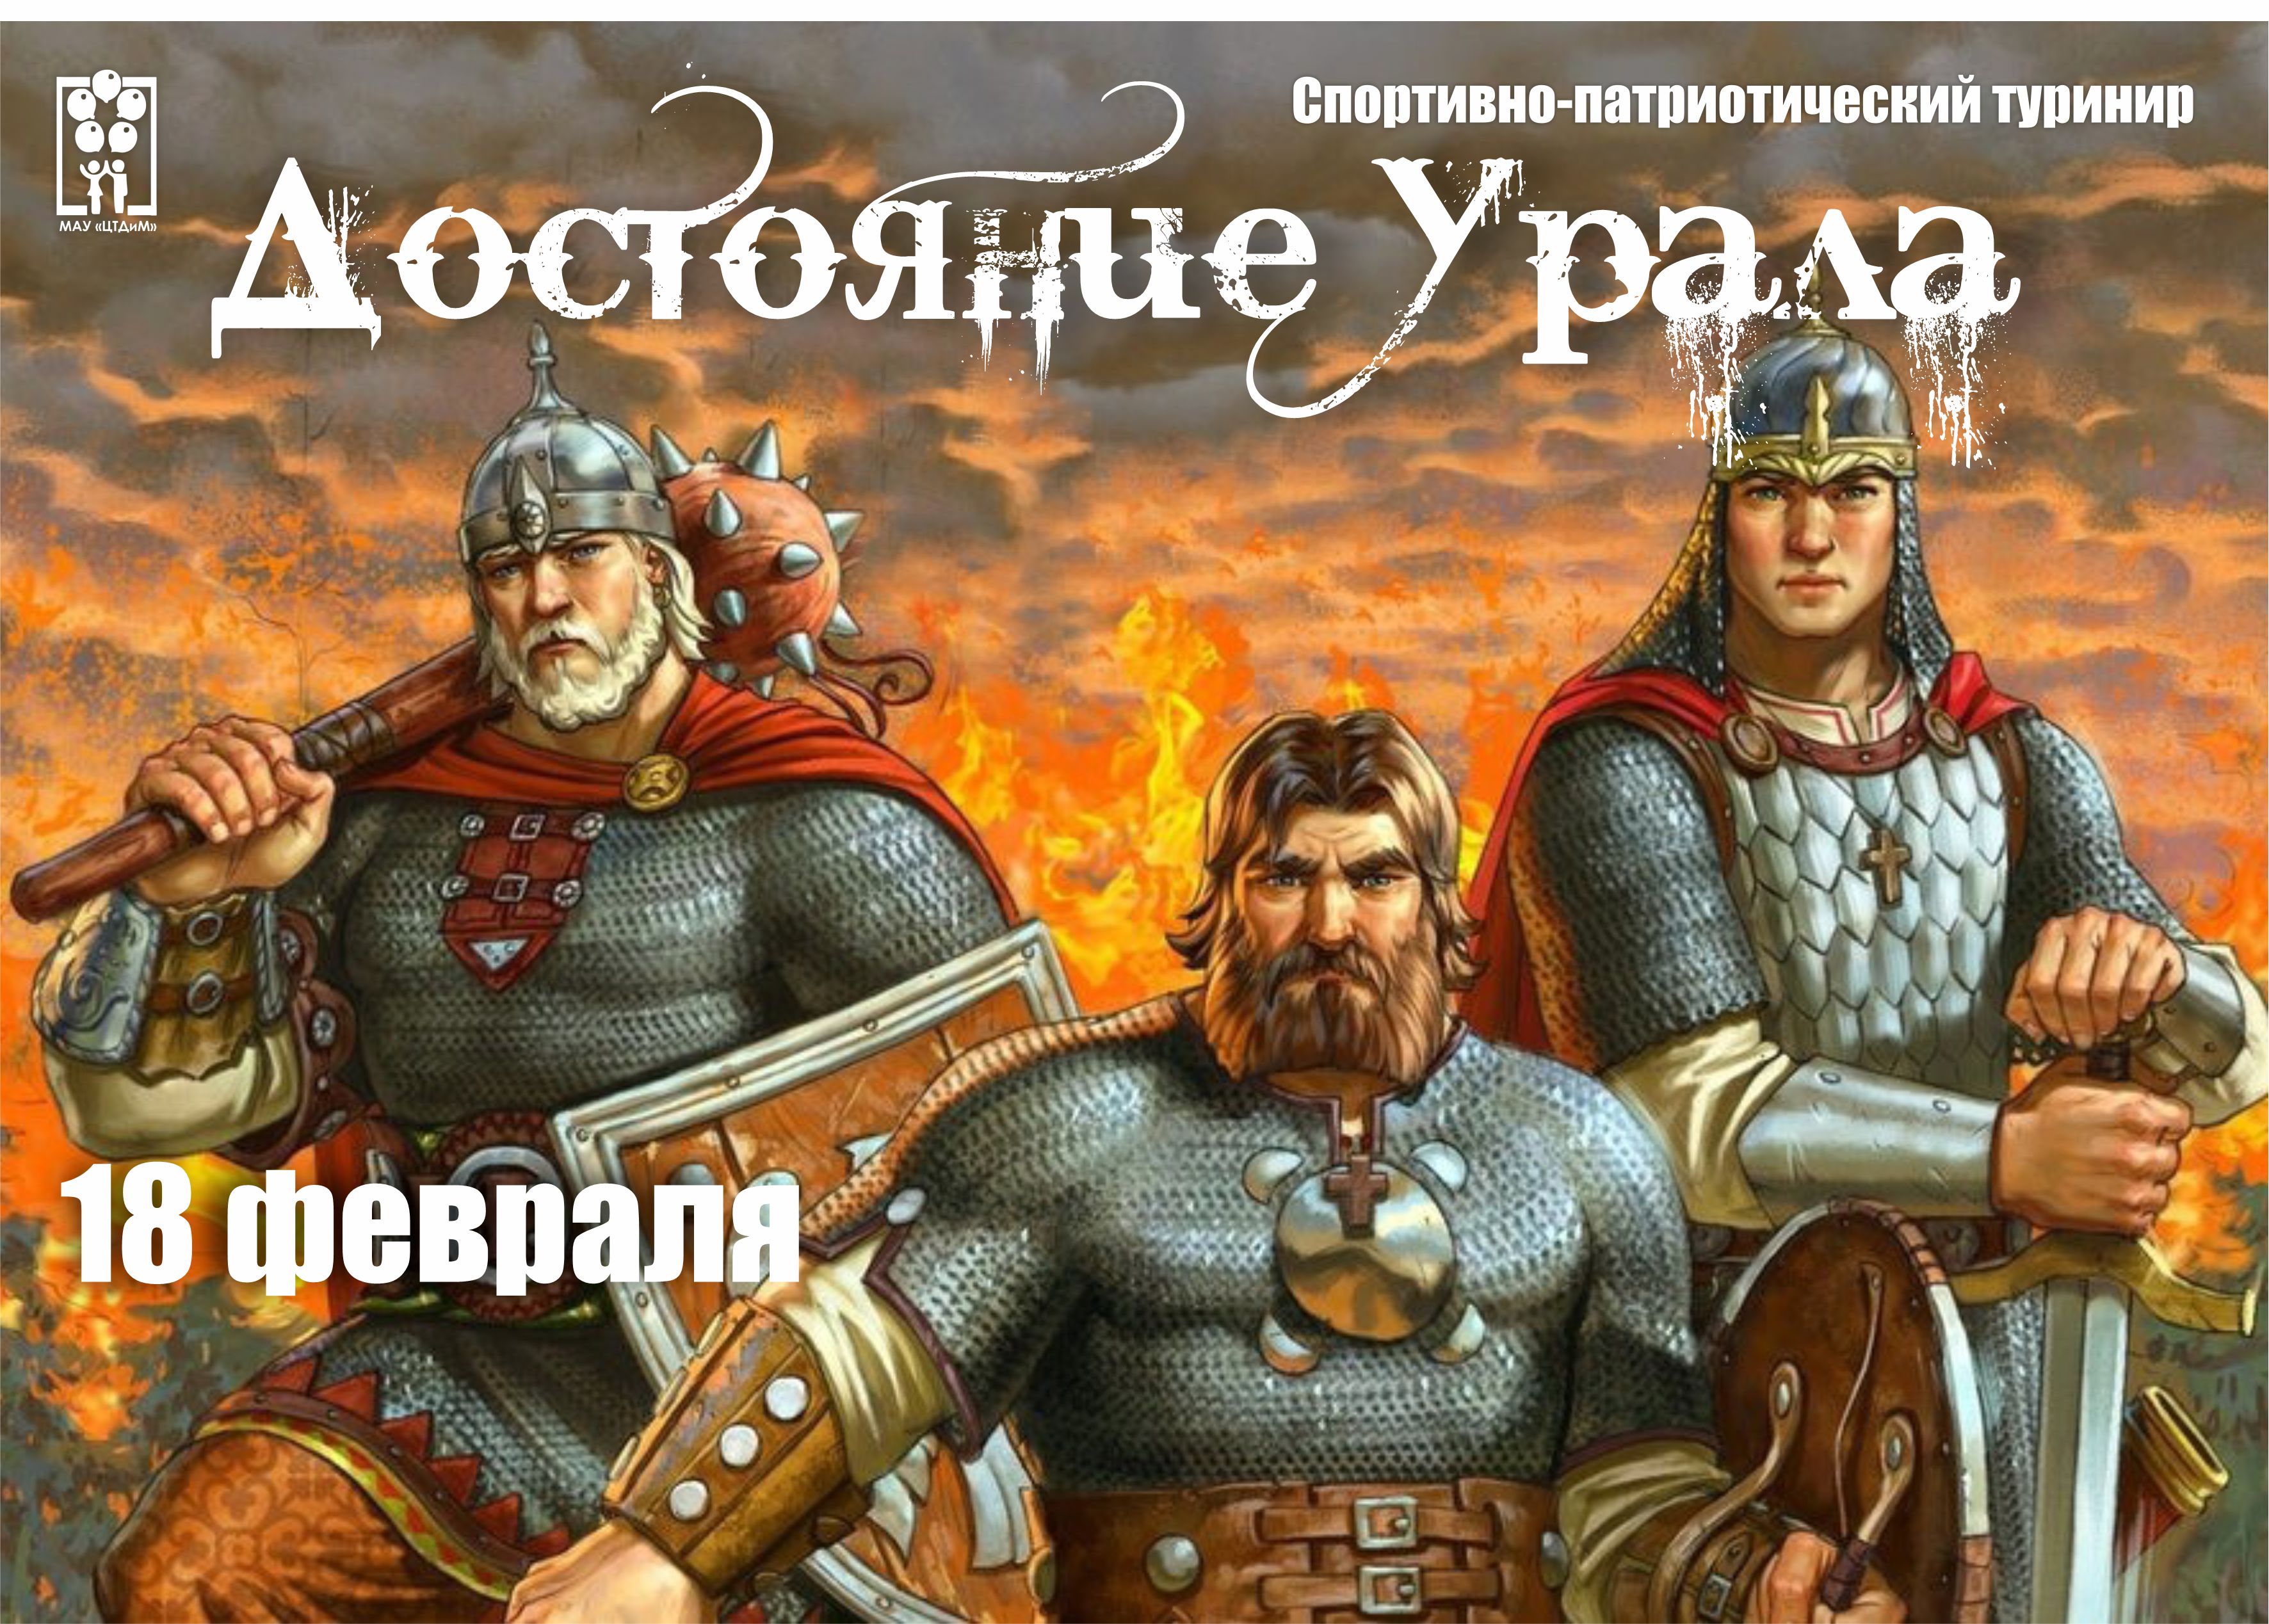 «Достояние Урала» - это люди с сильным характером! 